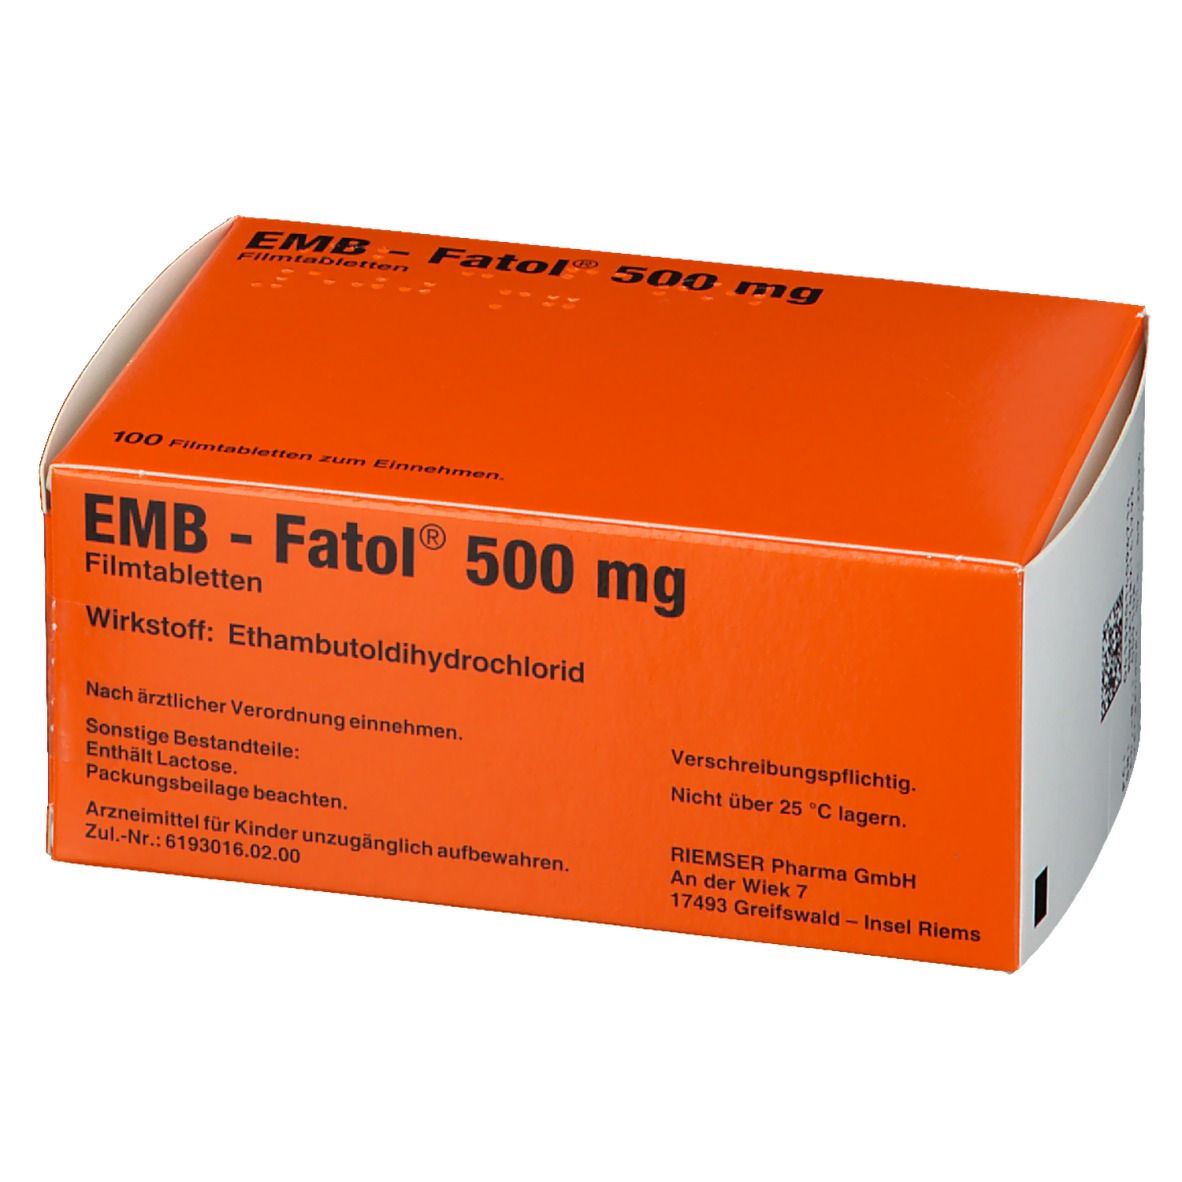 EMB-Fatol® 500 mg